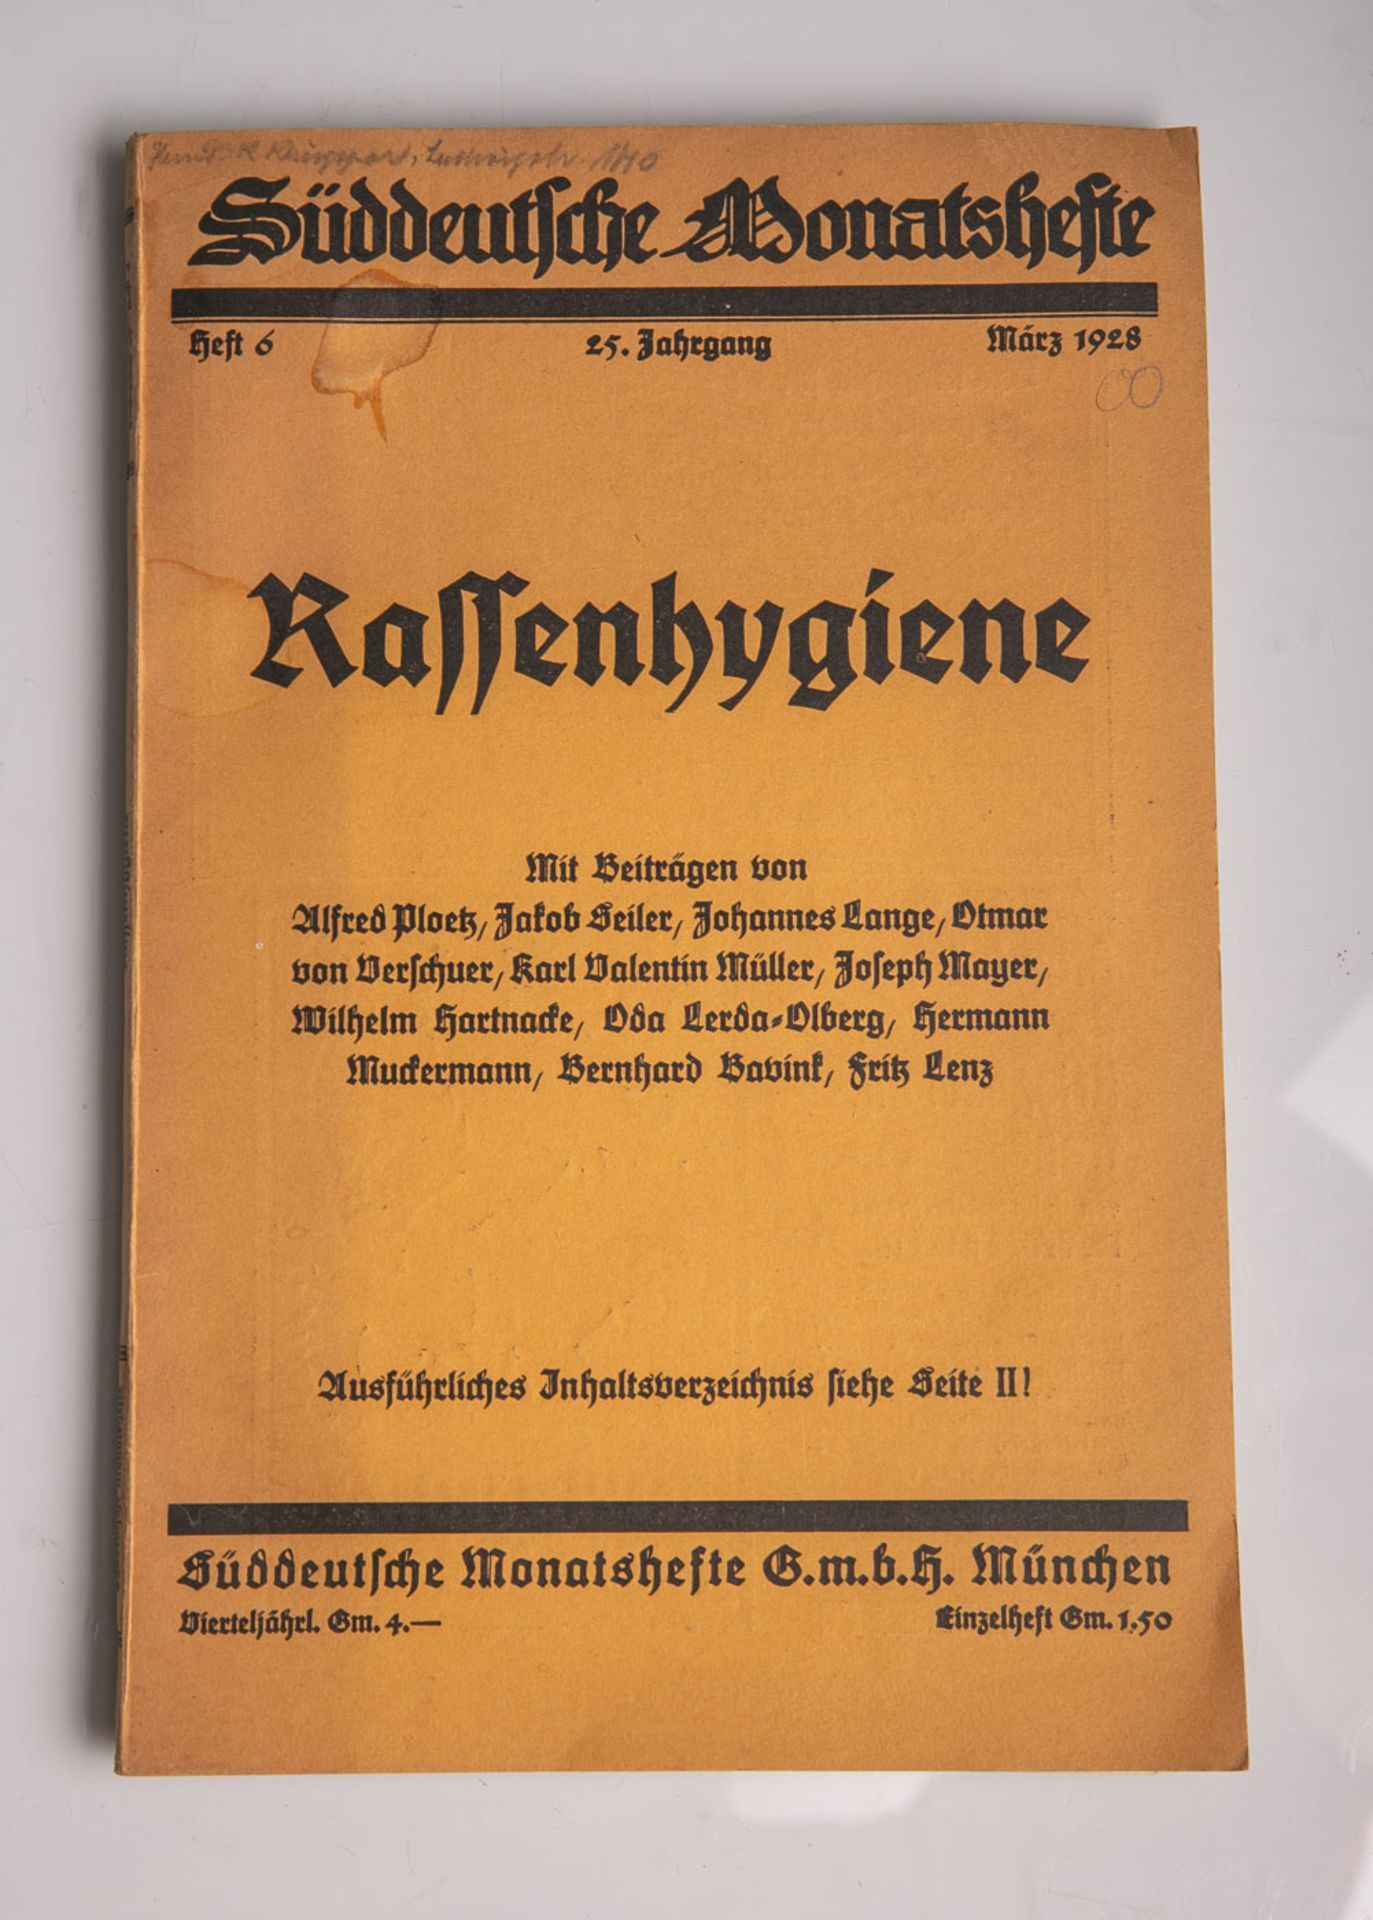 "Rassenhygiene", Süddeutsche Monatsheft, Heft 6, 25. Jahrgang, März 1928, Süddeutsche